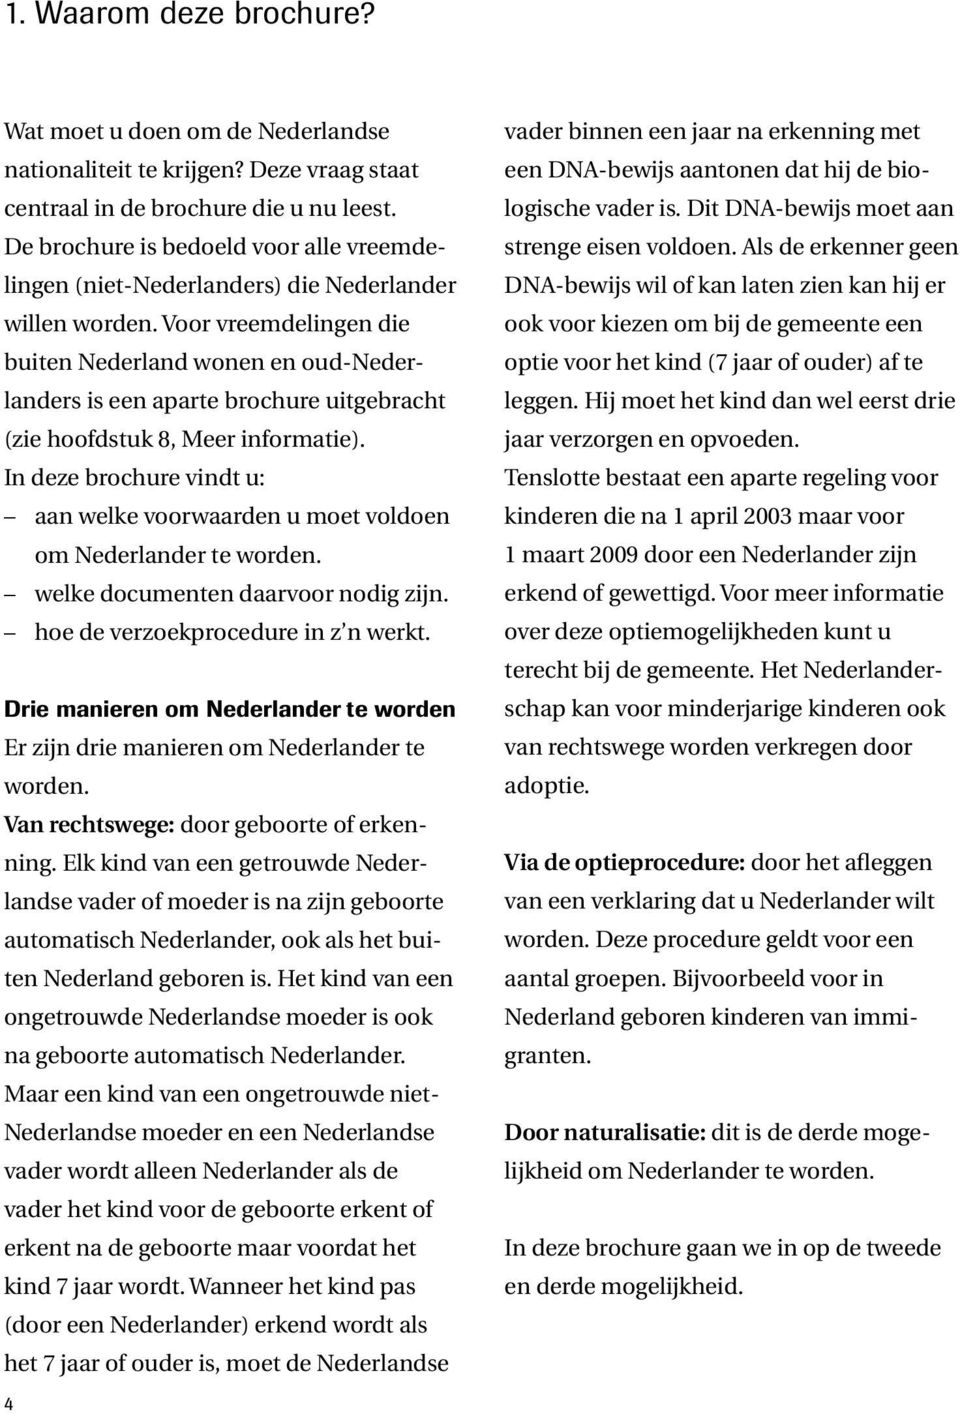 Voor vreemdelingen die buiten Nederland wonen en oud-nederlanders is een aparte brochure uitgebracht (zie hoofdstuk 8, Meer informatie).